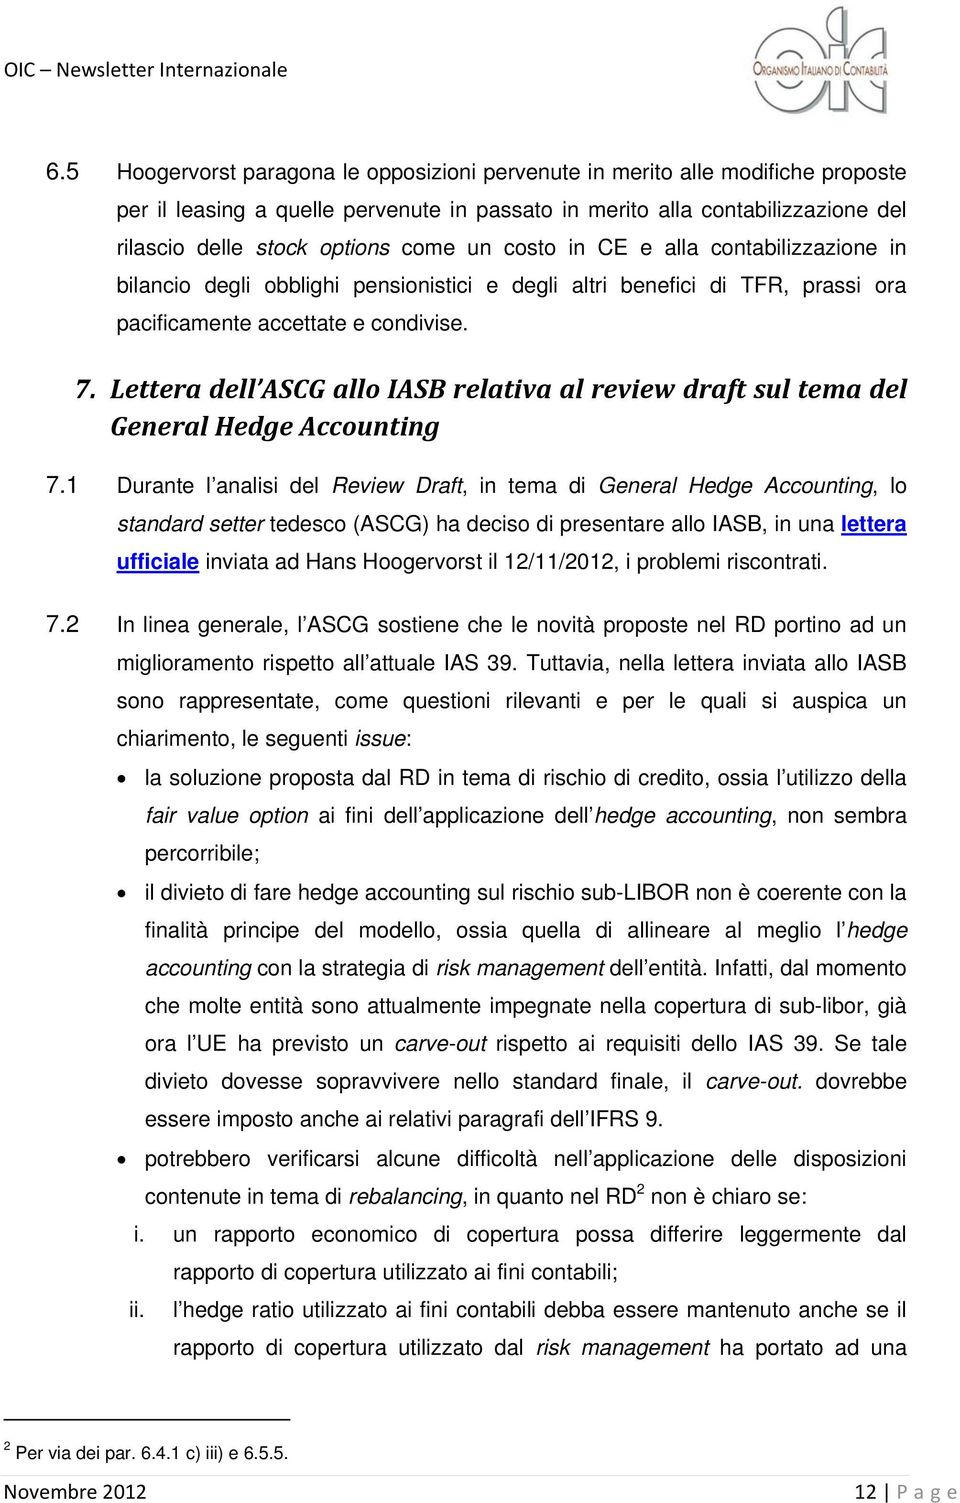 Lettera dell ASCG allo IASB relativa al review draft sul tema del General Hedge Accounting 7.